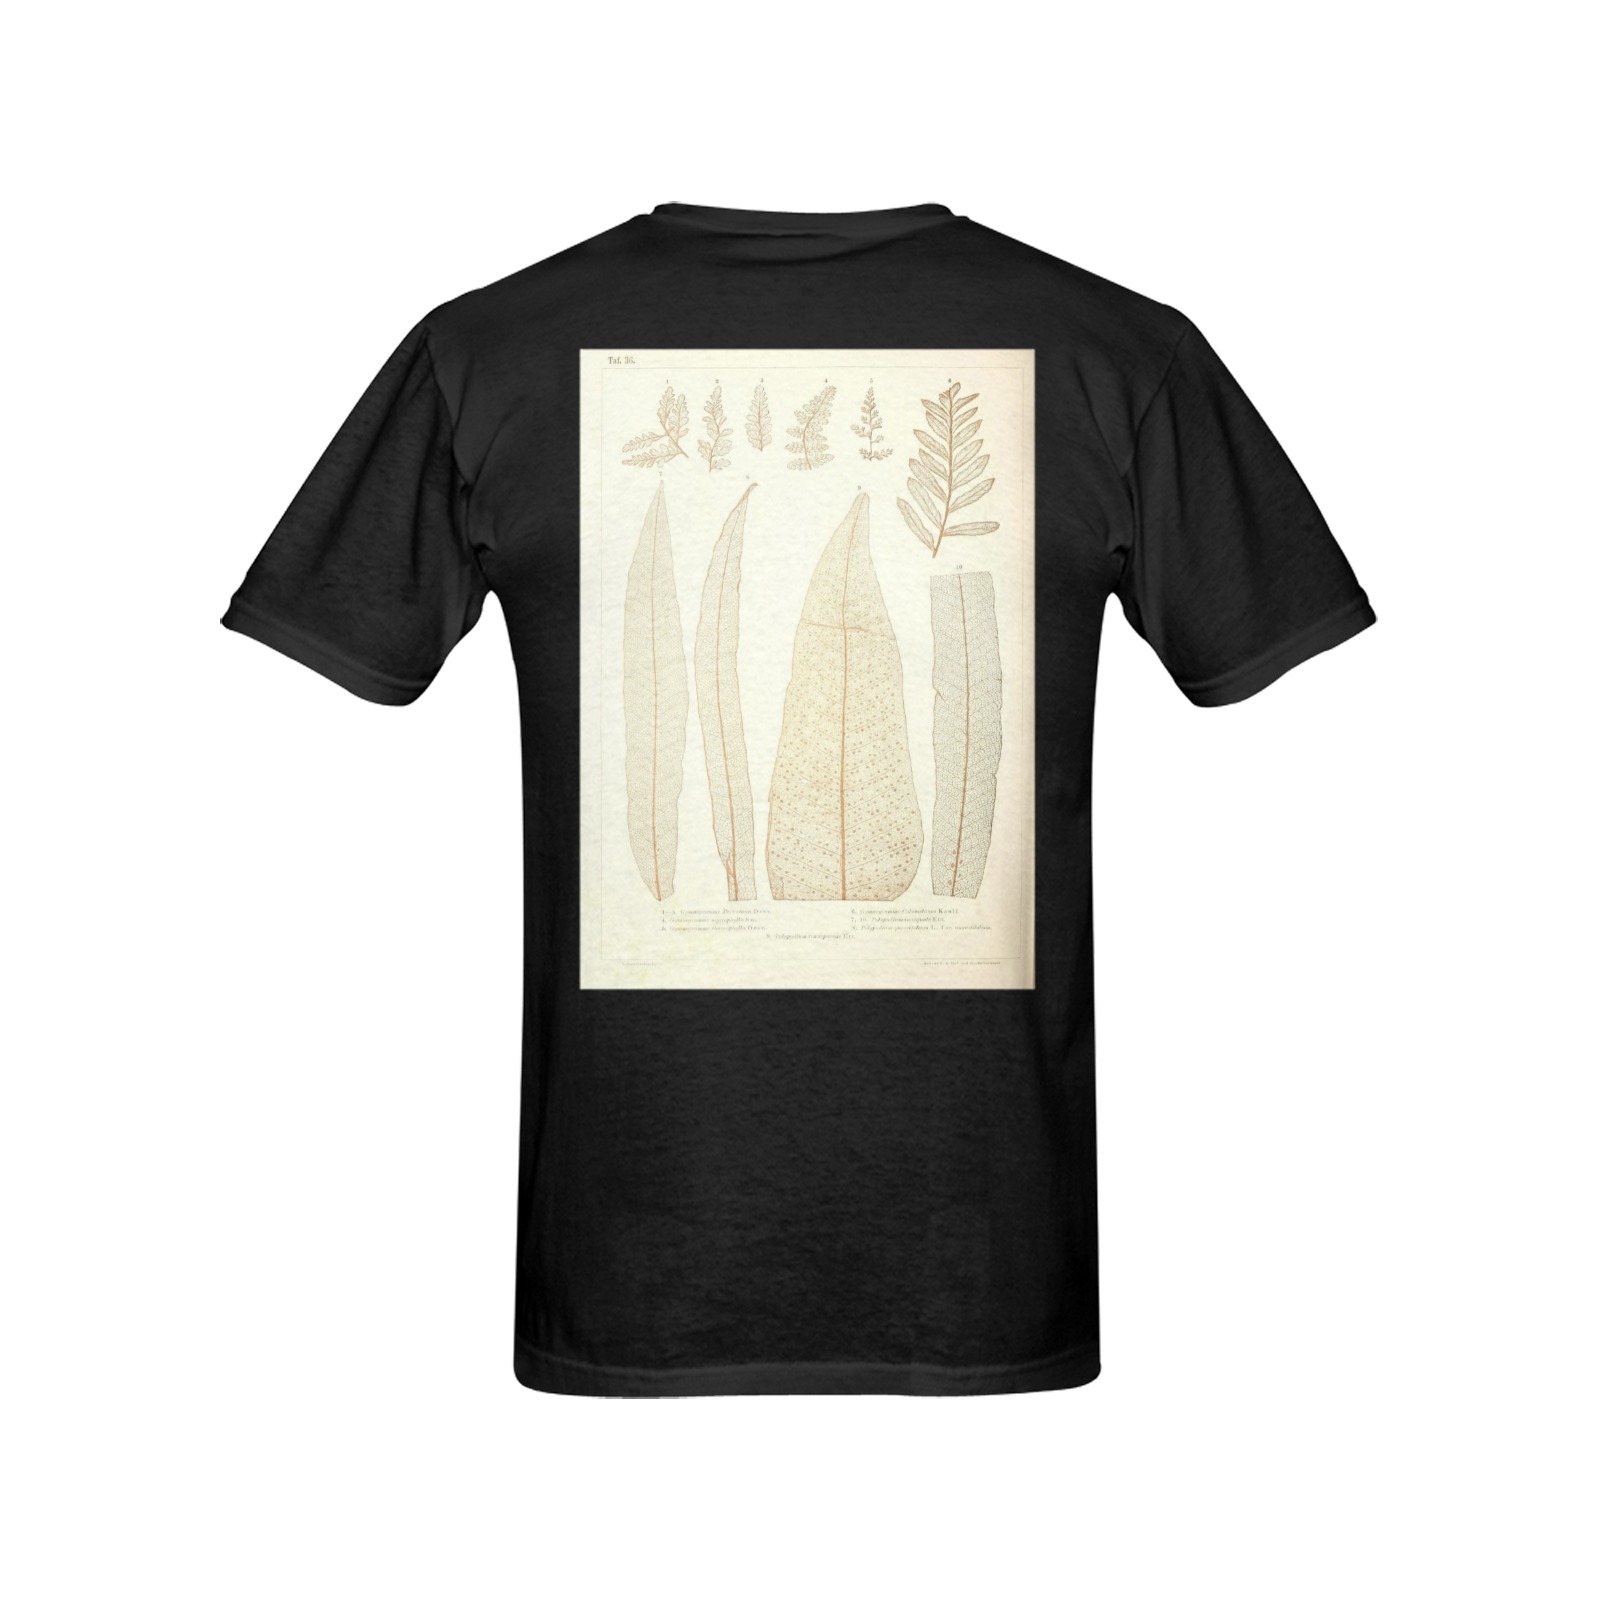 50665286196_c47de60e57_o Men's T-Shirt in USA Size (Two Sides Printing)